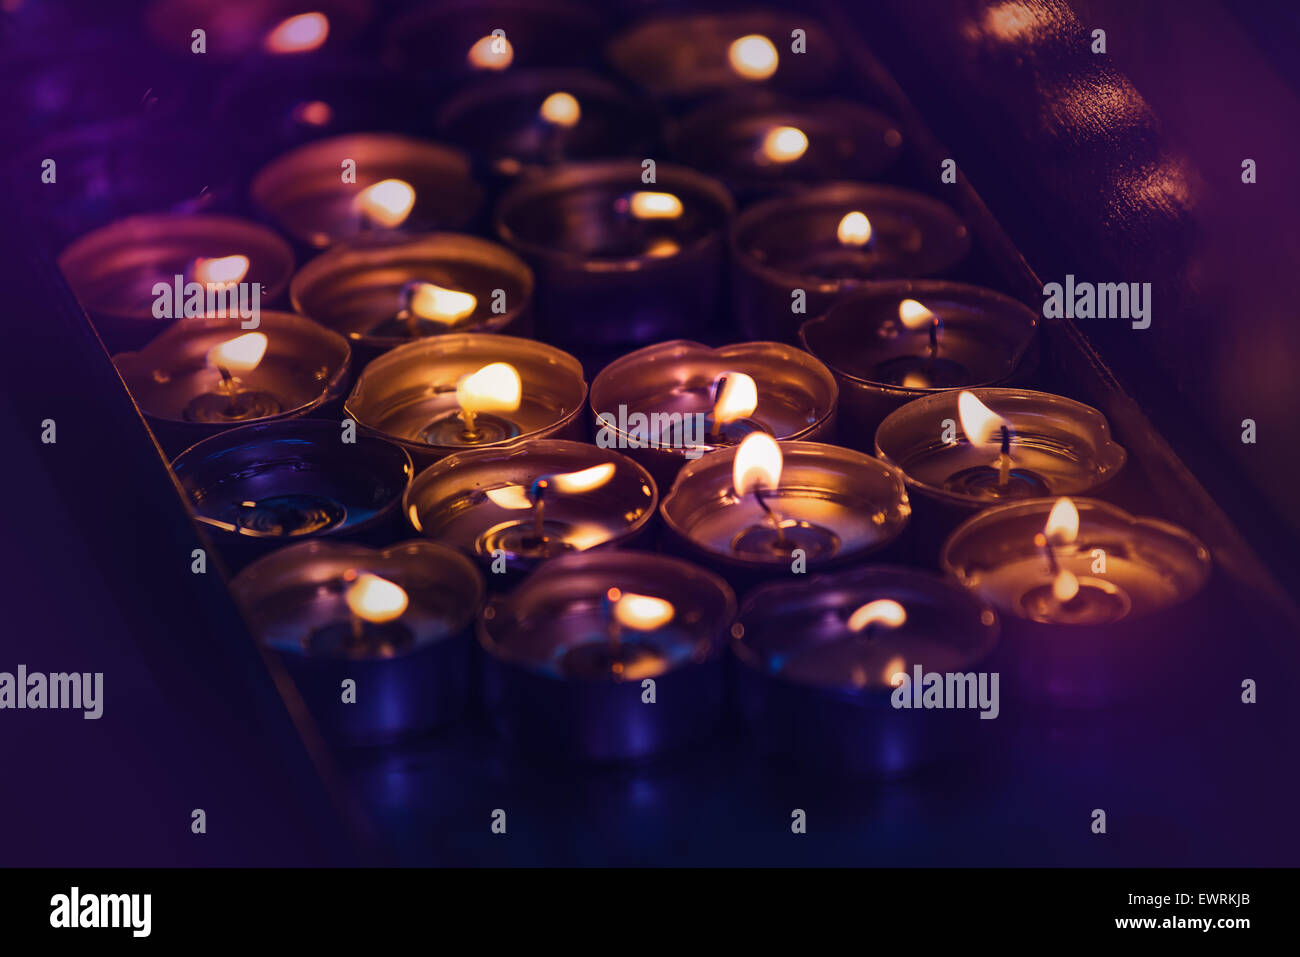 Spa romantique des bougies allumées, disposées en groupe salle sombre, Lumière Effet Bokeh Banque D'Images